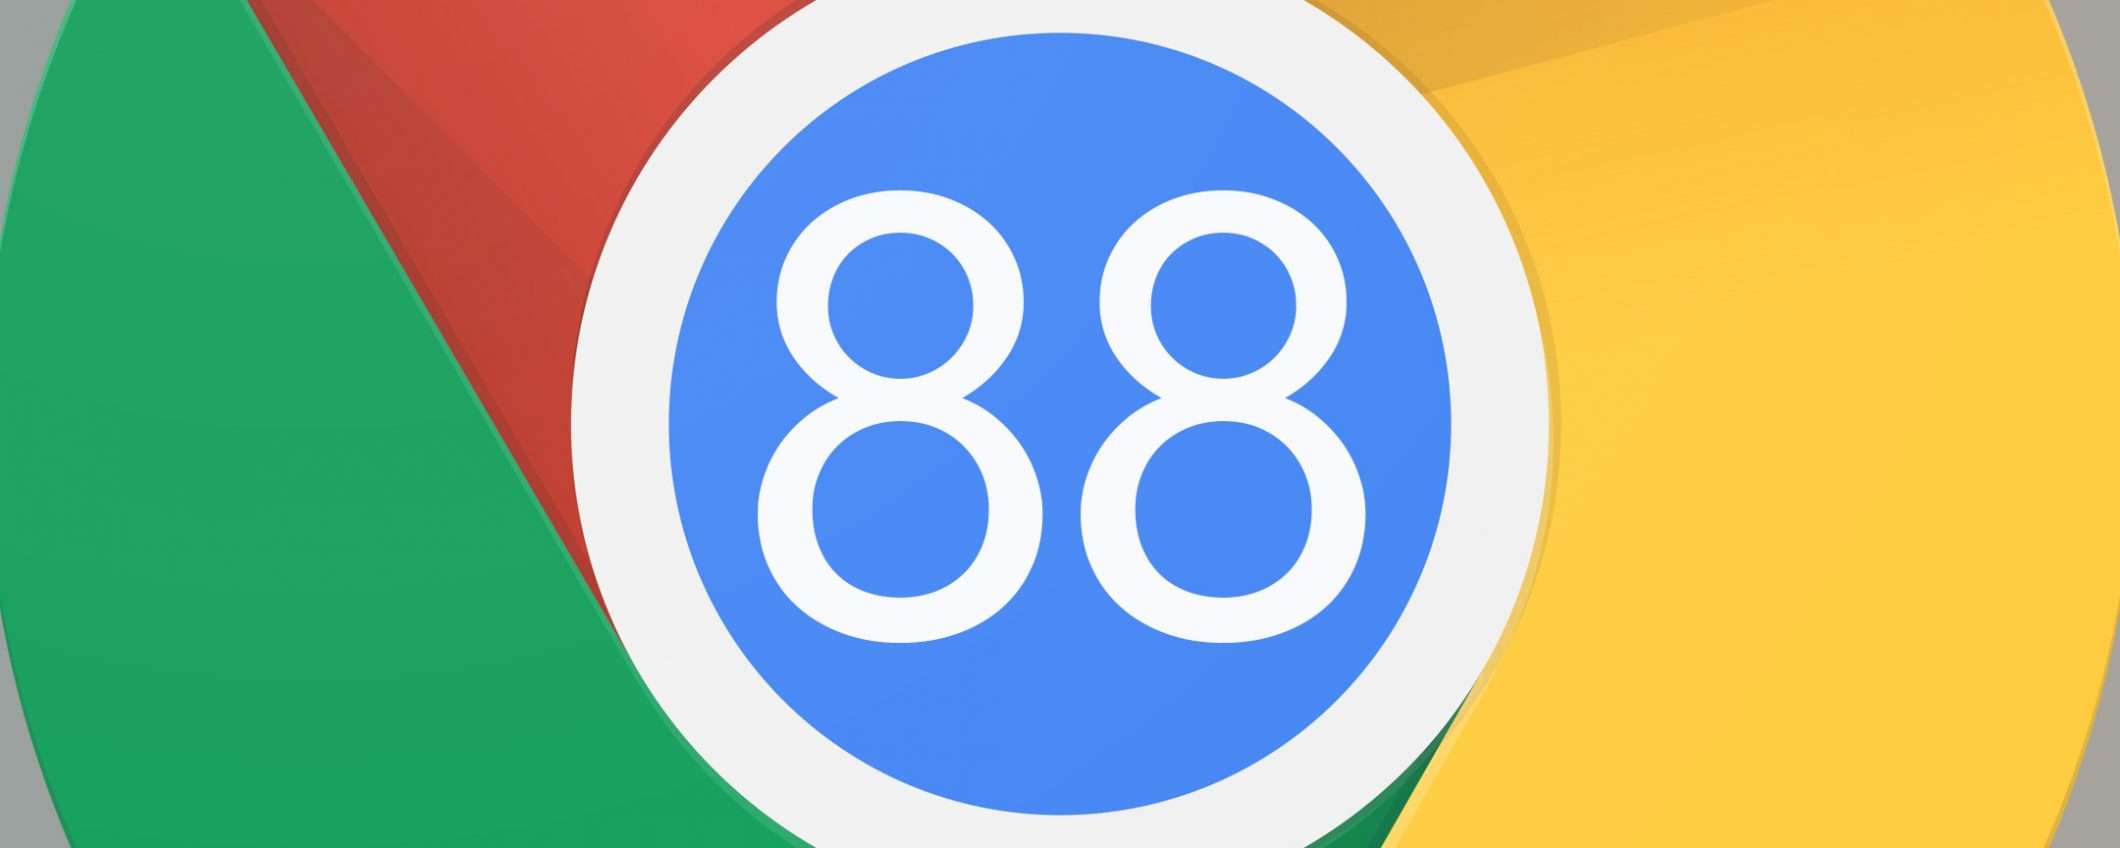 Chrome 88: nuovo aggiornamento per la sicurezza